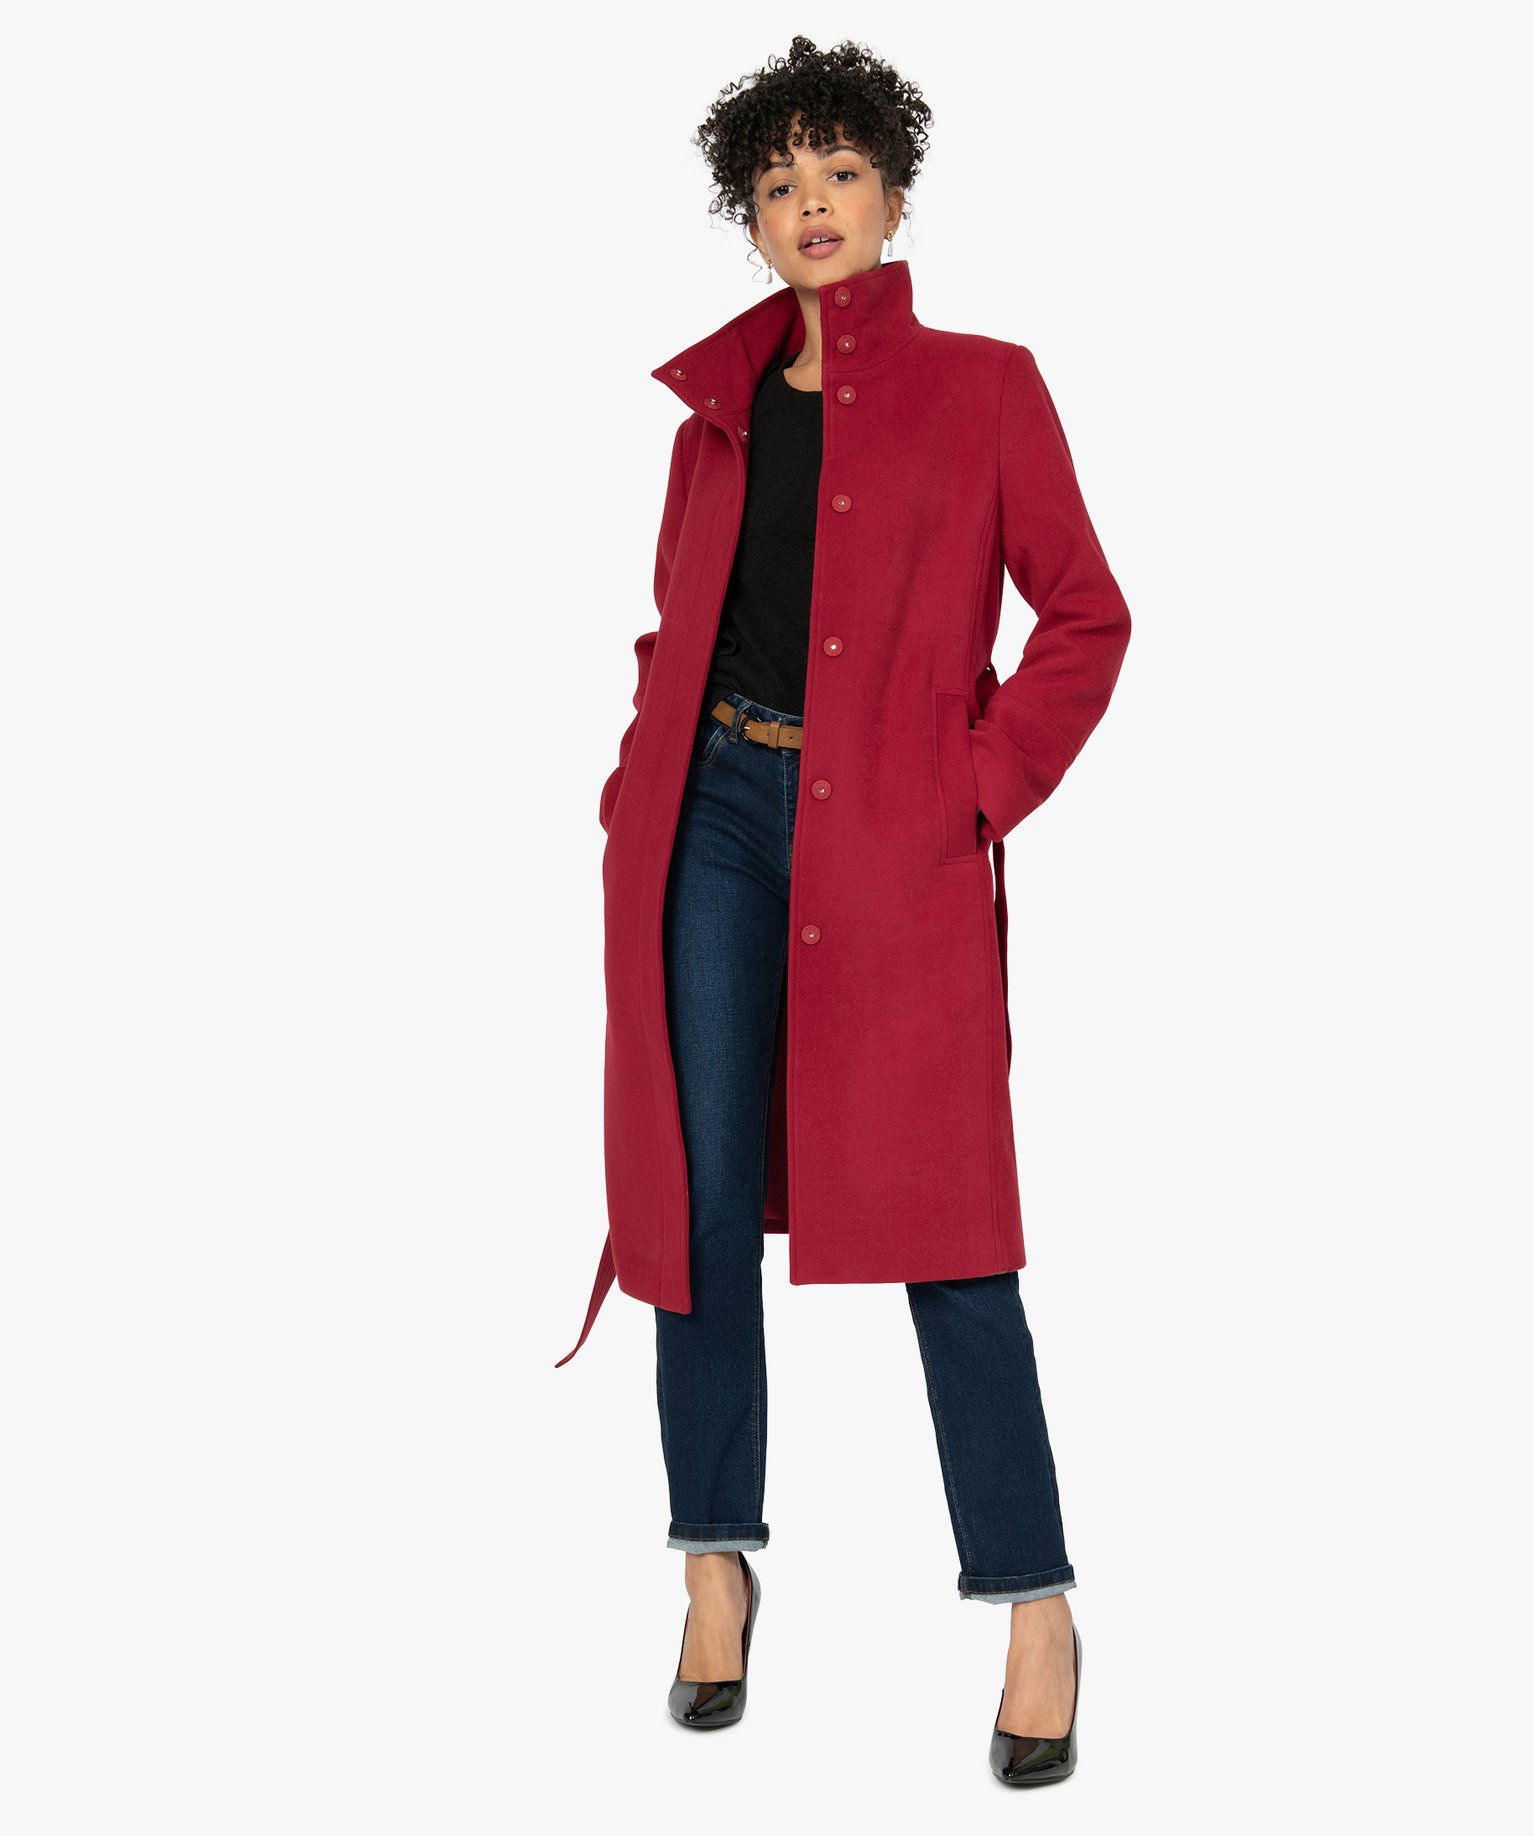 manteau femme magasin gemo